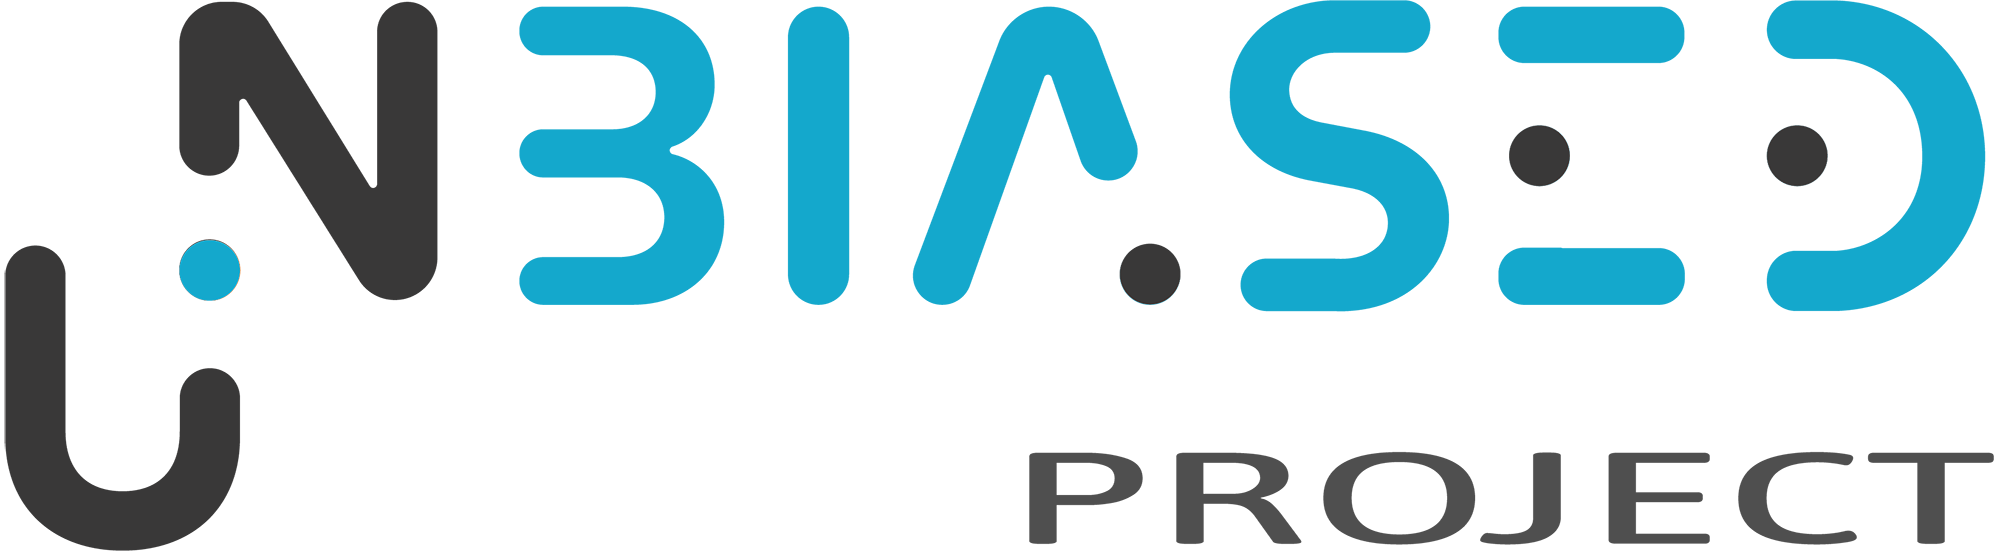 Unbiased project logo